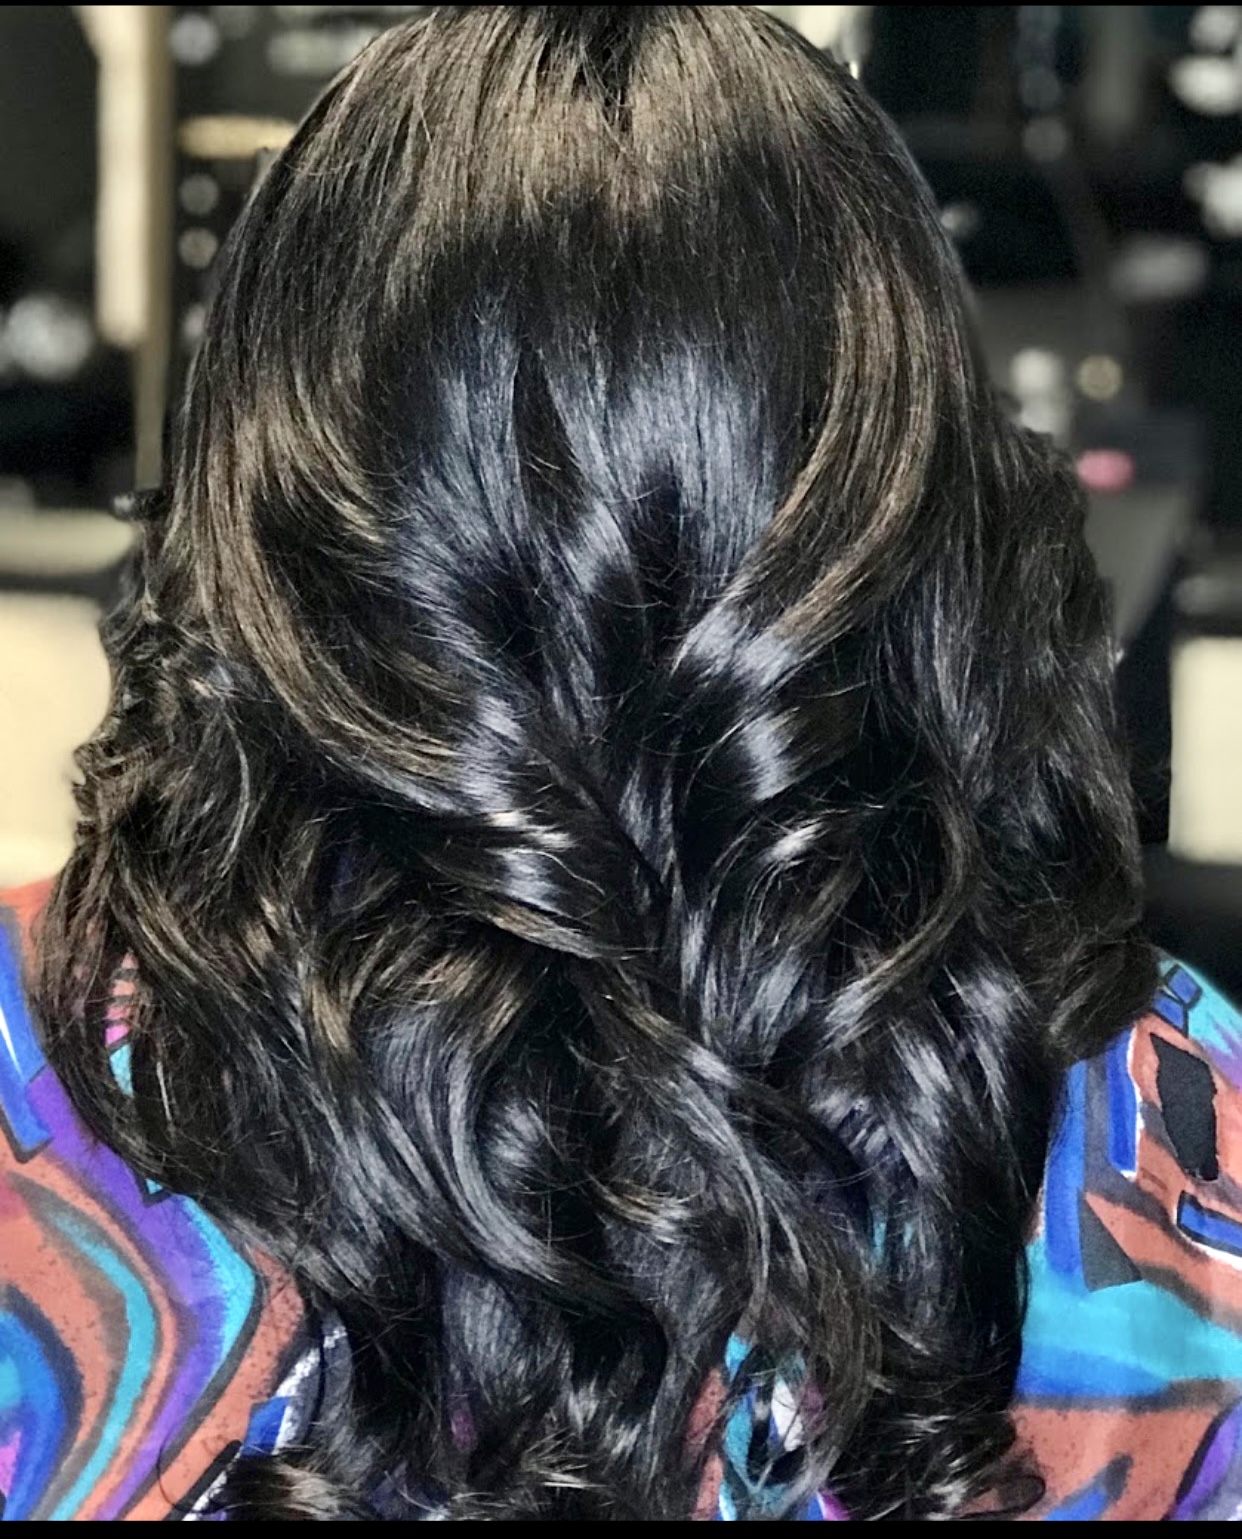 Hair Salon | Atlanta, GA - The Mane Tamer Hair Spa